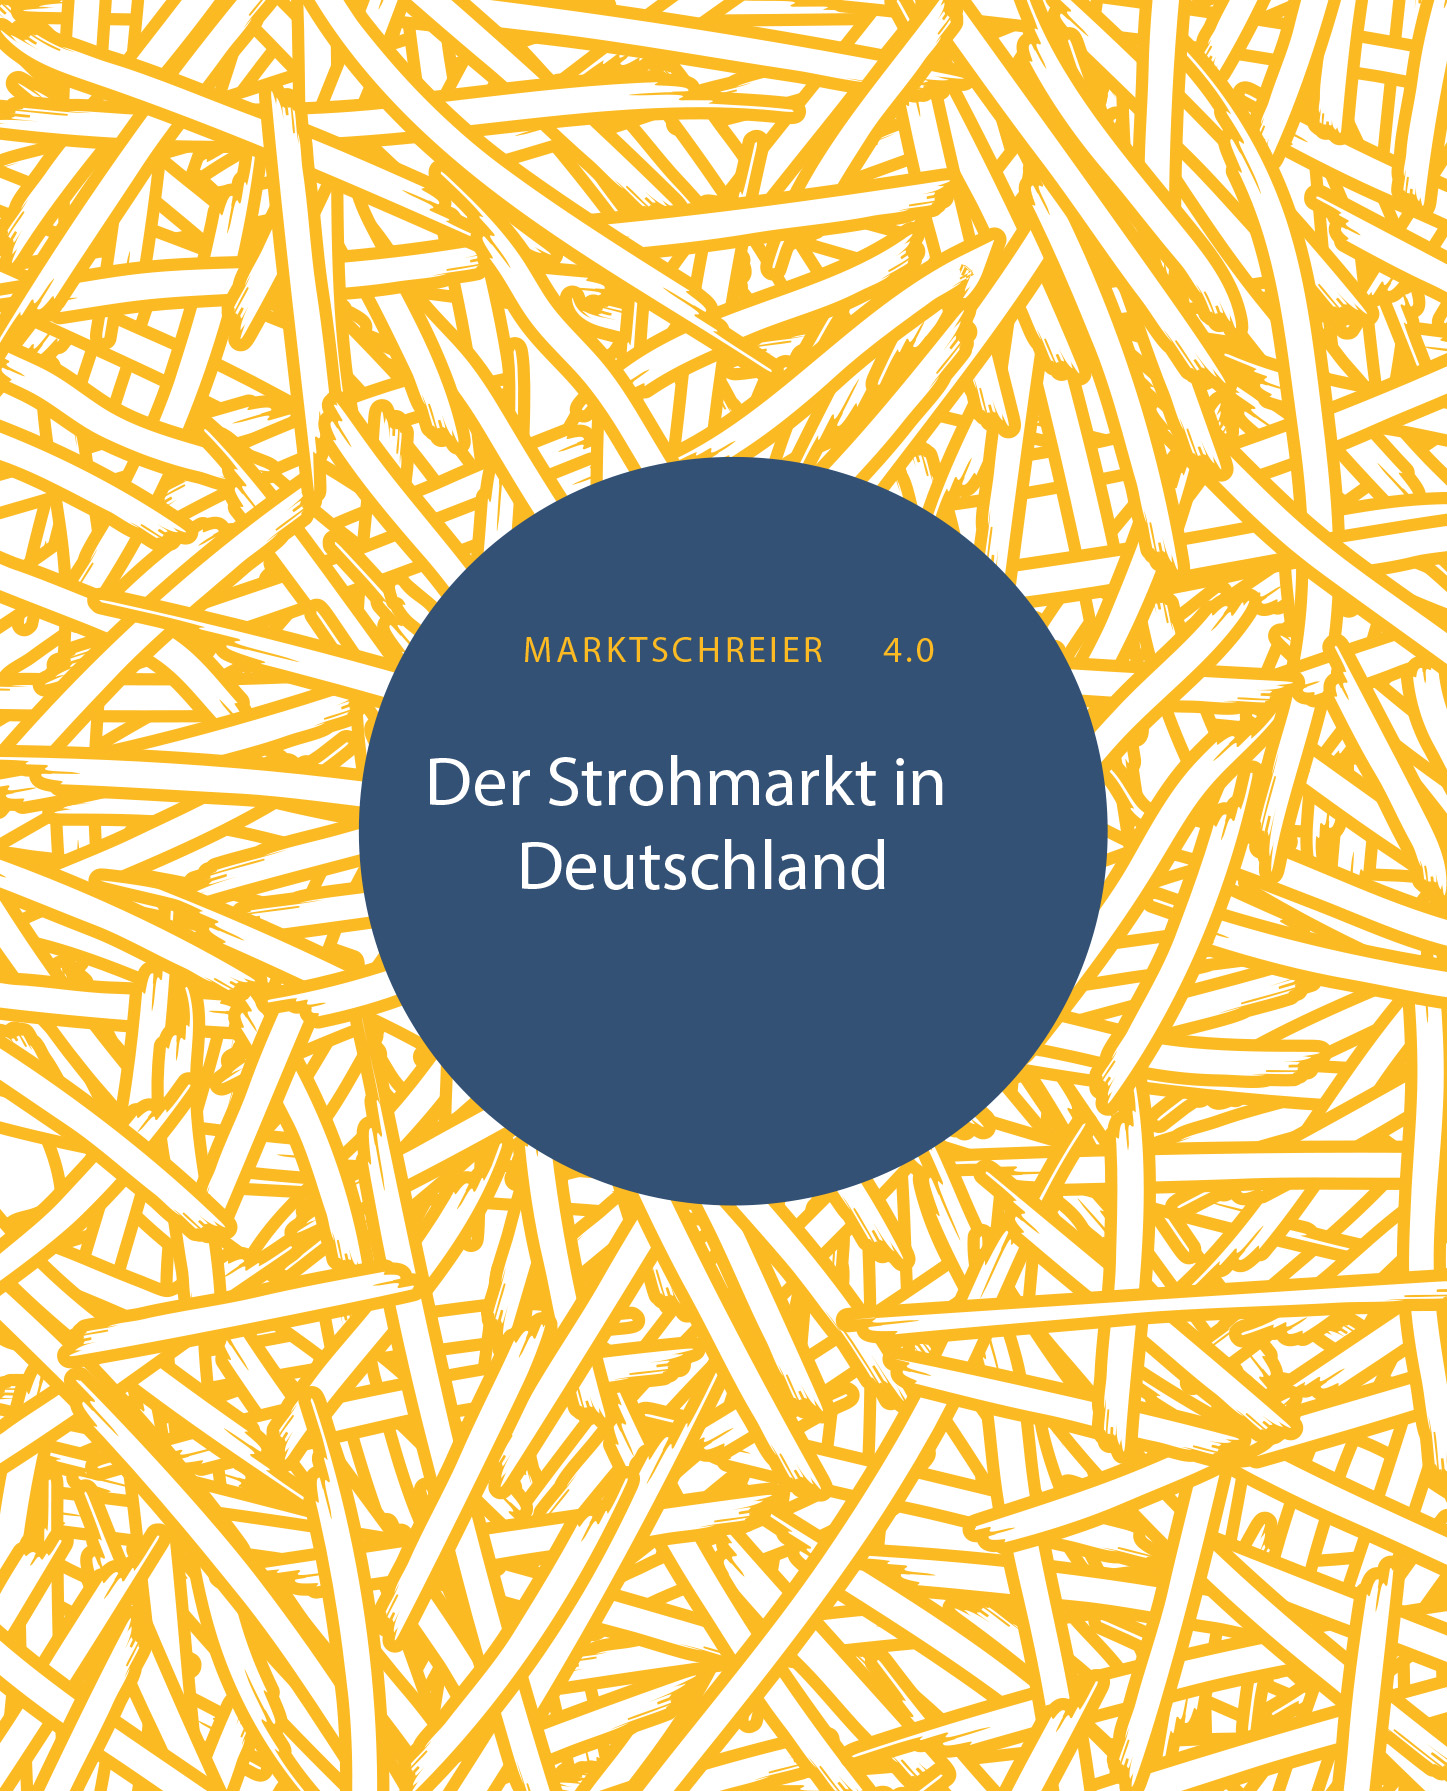 Broschüre über den Strohmarkt in Deutschland, Deckblatt